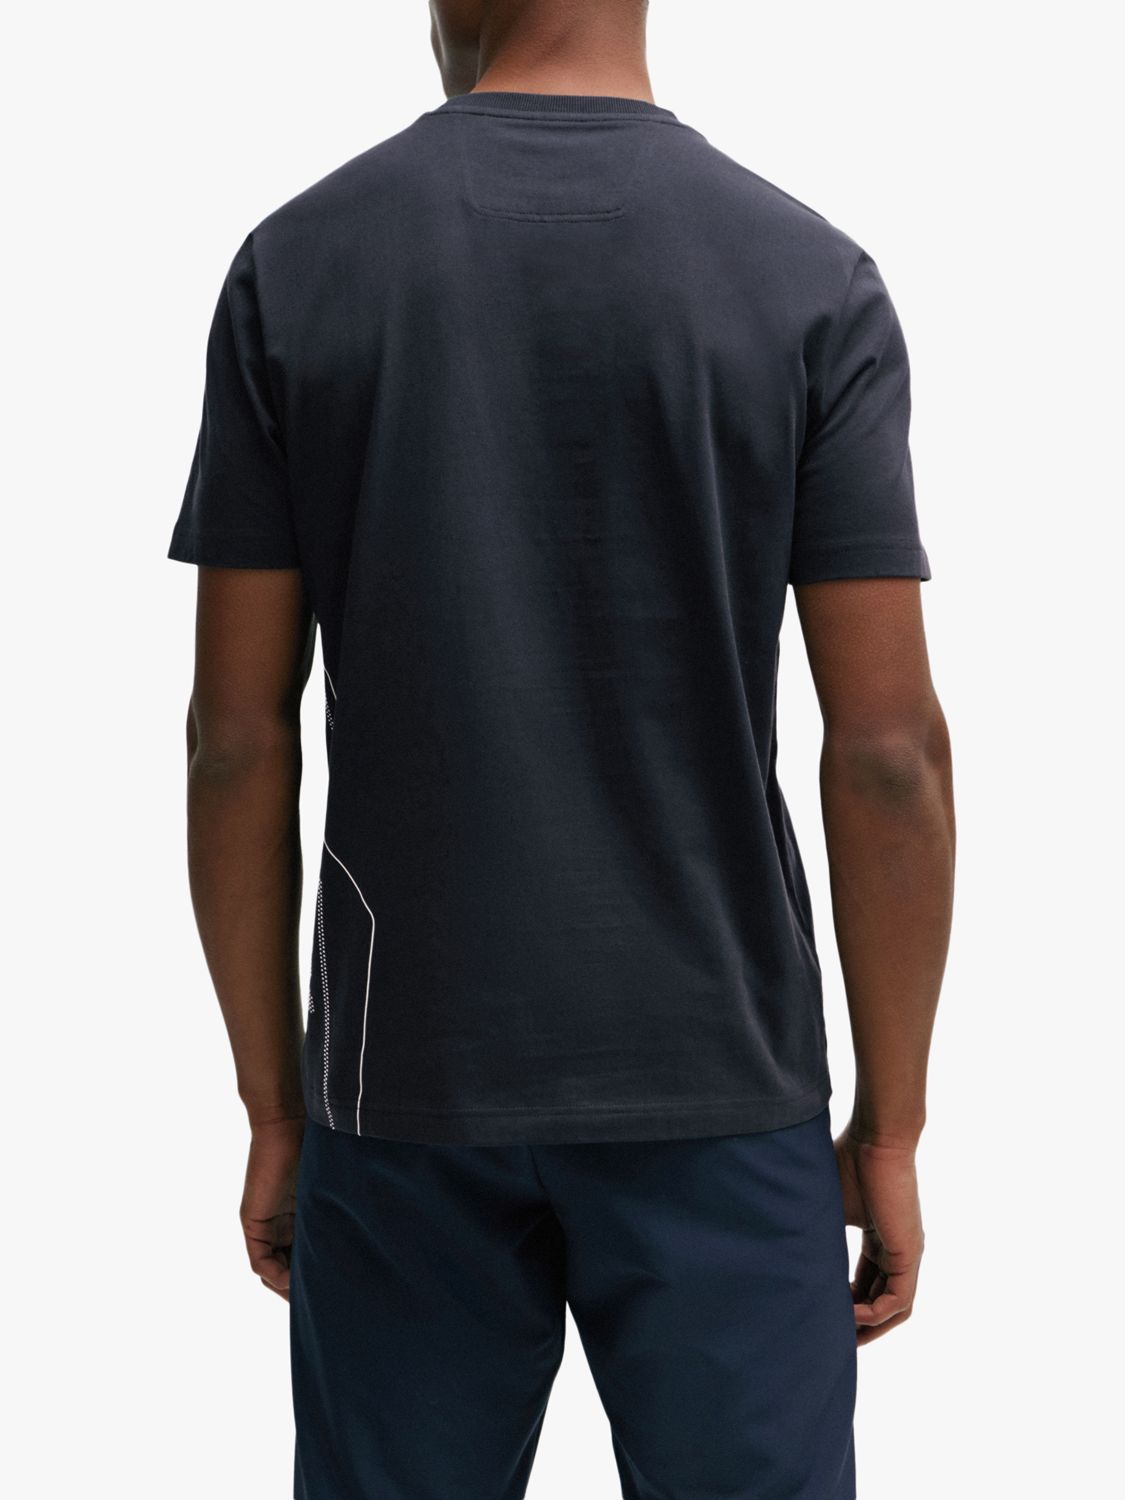 BOSS Tee 3 Short Sleeve T-Shirt, Dark Blue, XL